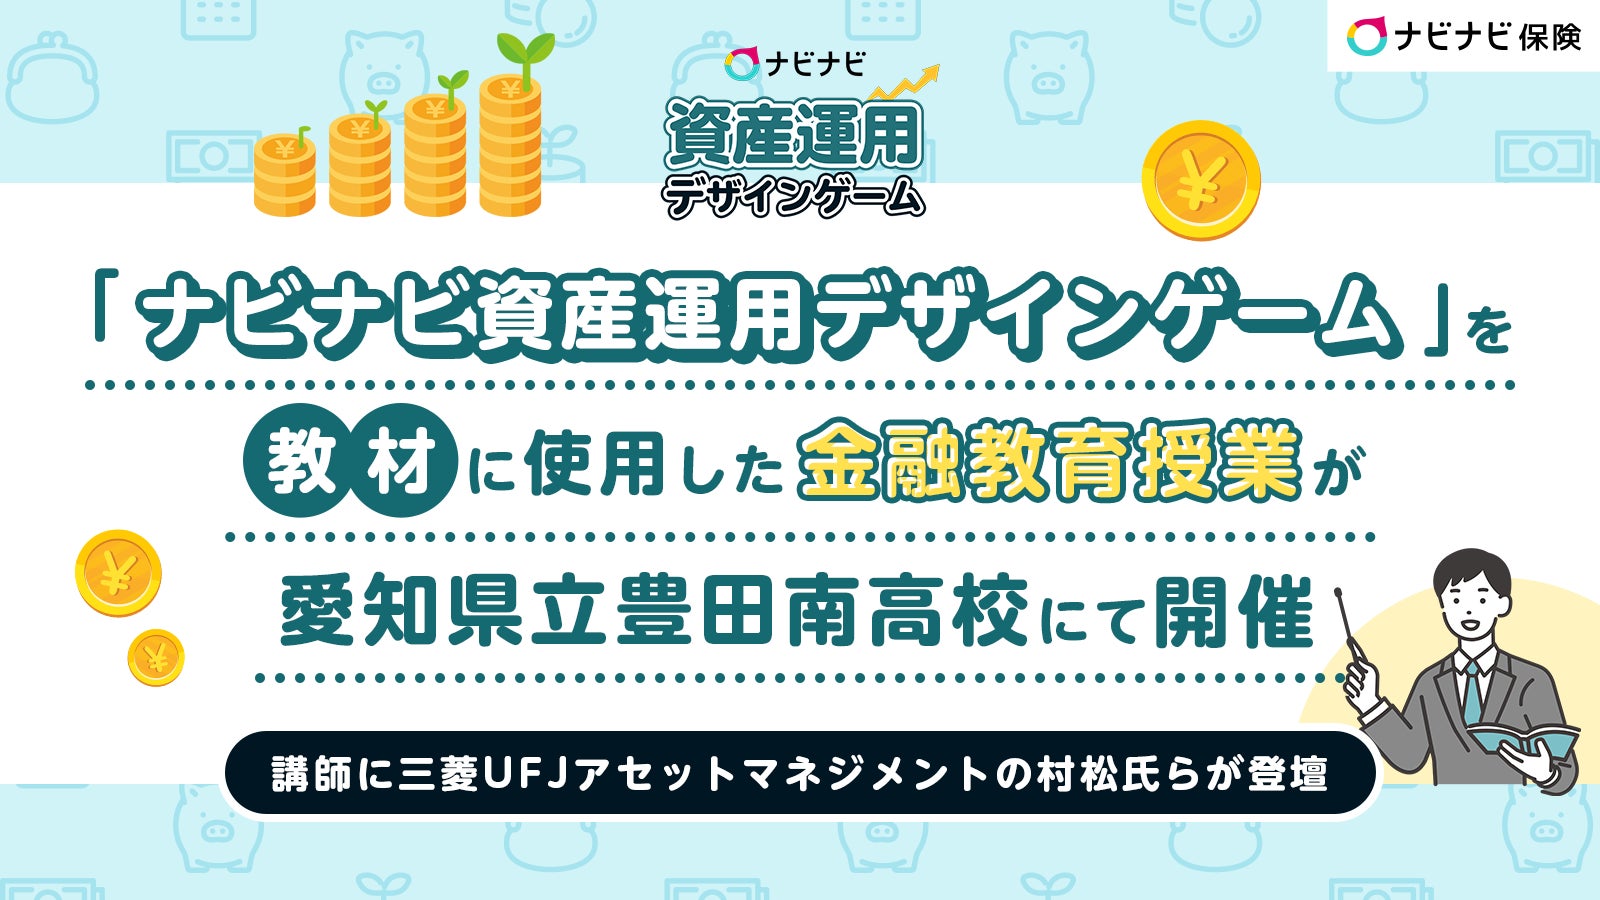 「ナビナビ資産運用デザインゲーム」を教材に使用した金融教育授業が愛知県立豊田南高校にて開催